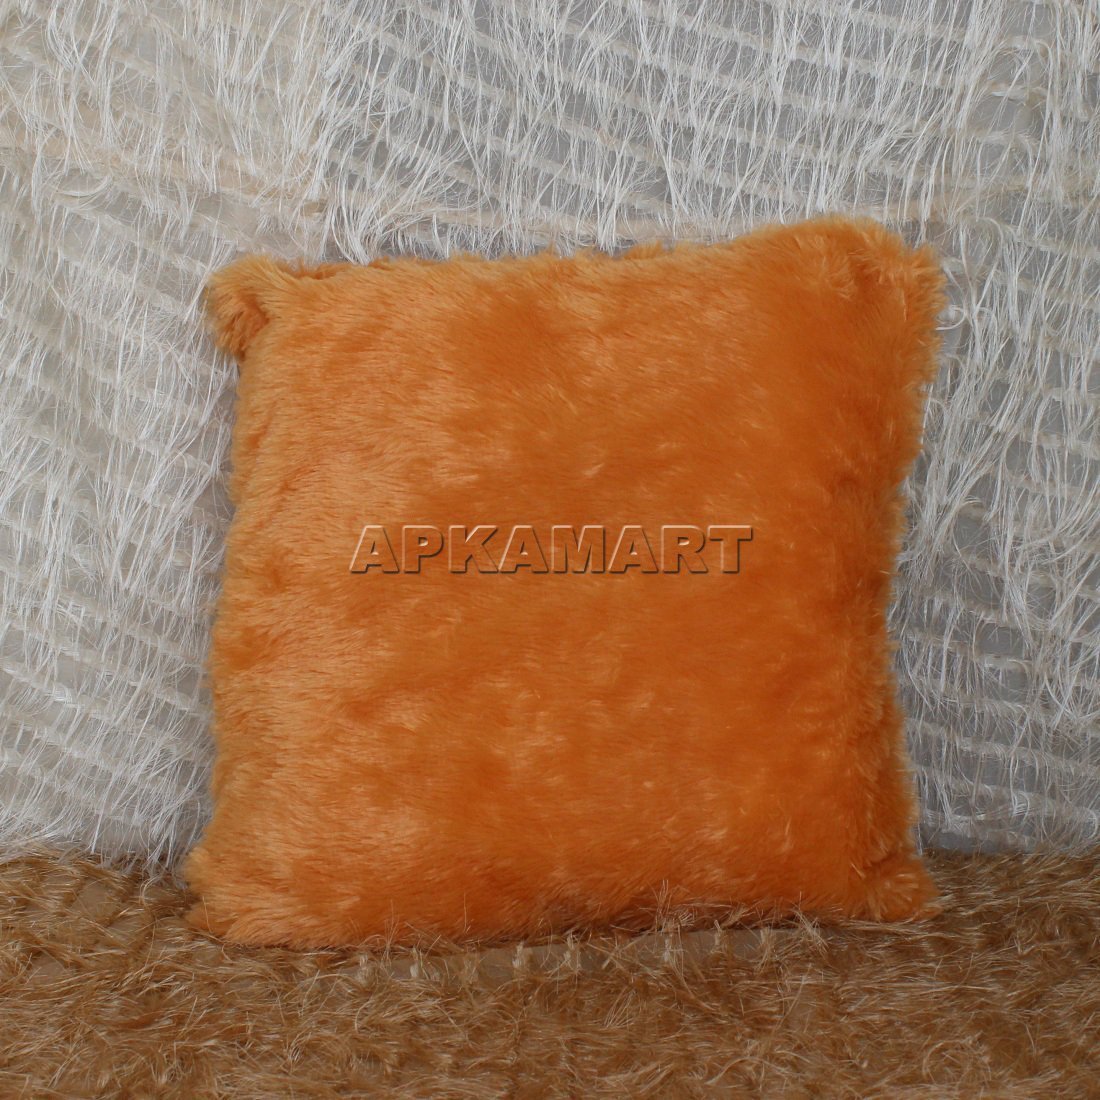 Soft Brown Pillow - ApkaMart